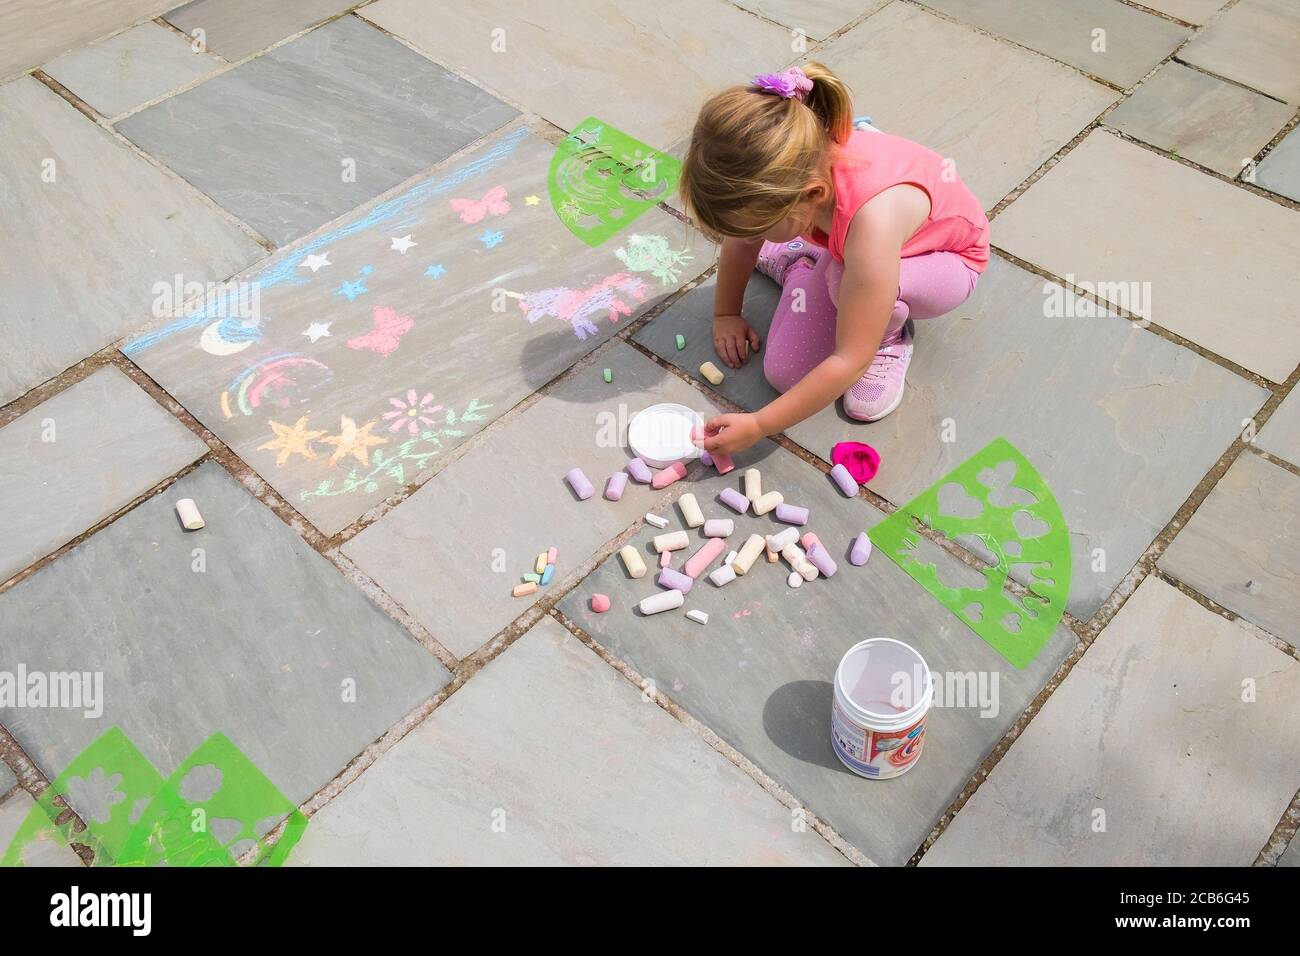 Ein fünfjähriges Mädchen amüsant herslef eifrig mit Plastikschablonen zu Kreide Formen auf einem Plattenboden. Stockfoto